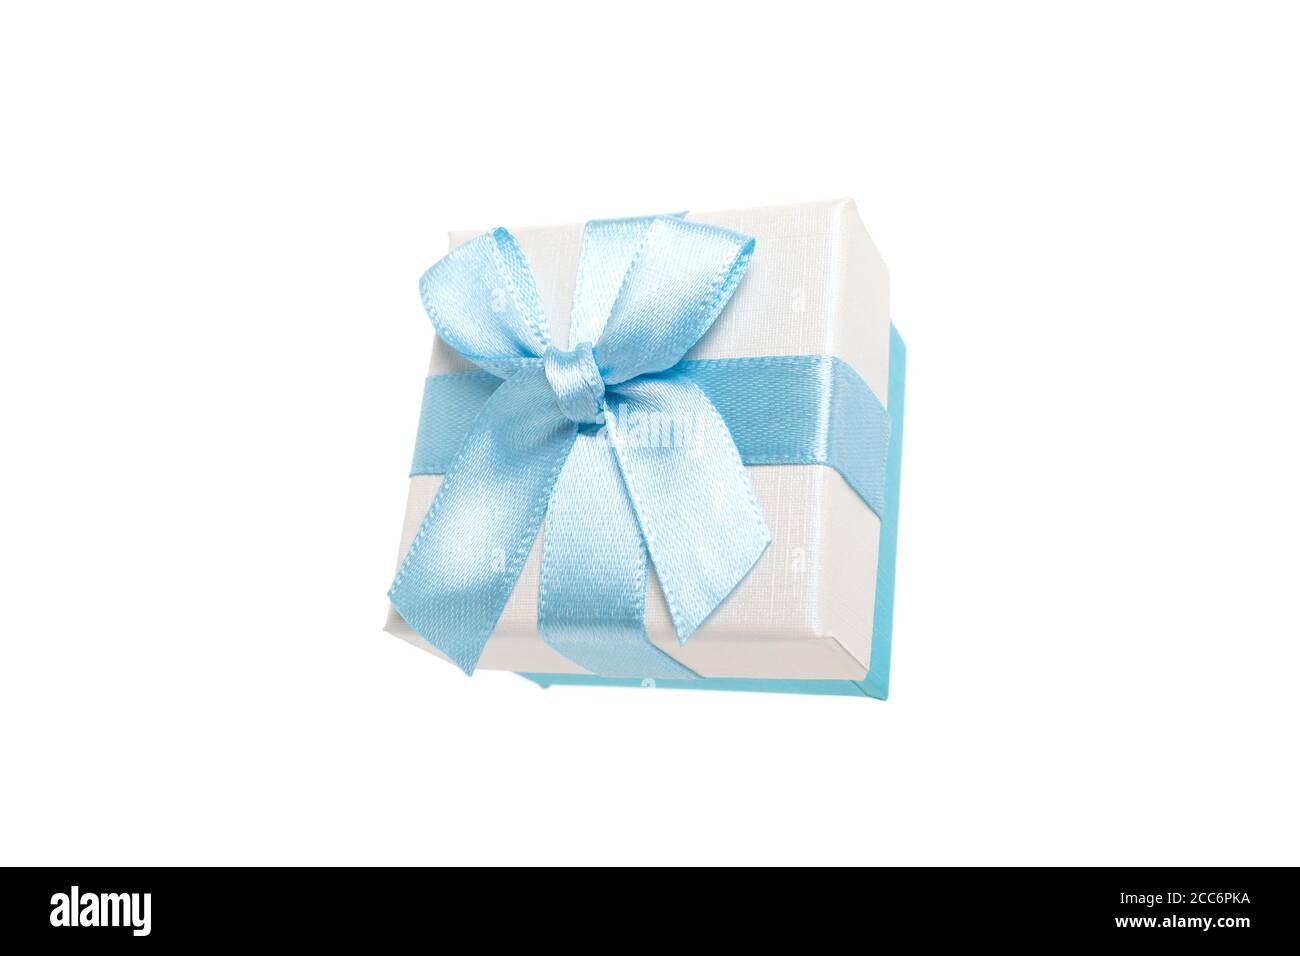 Geschenkbox mit Schleife für Ringe in einer zarten Farbe von Blau und Beige. Überraschung für eine Geburtstagsfeier, ein weihnachtsfest und Herzlichen Glückwunsch. Nahaufnahme st Stockfoto